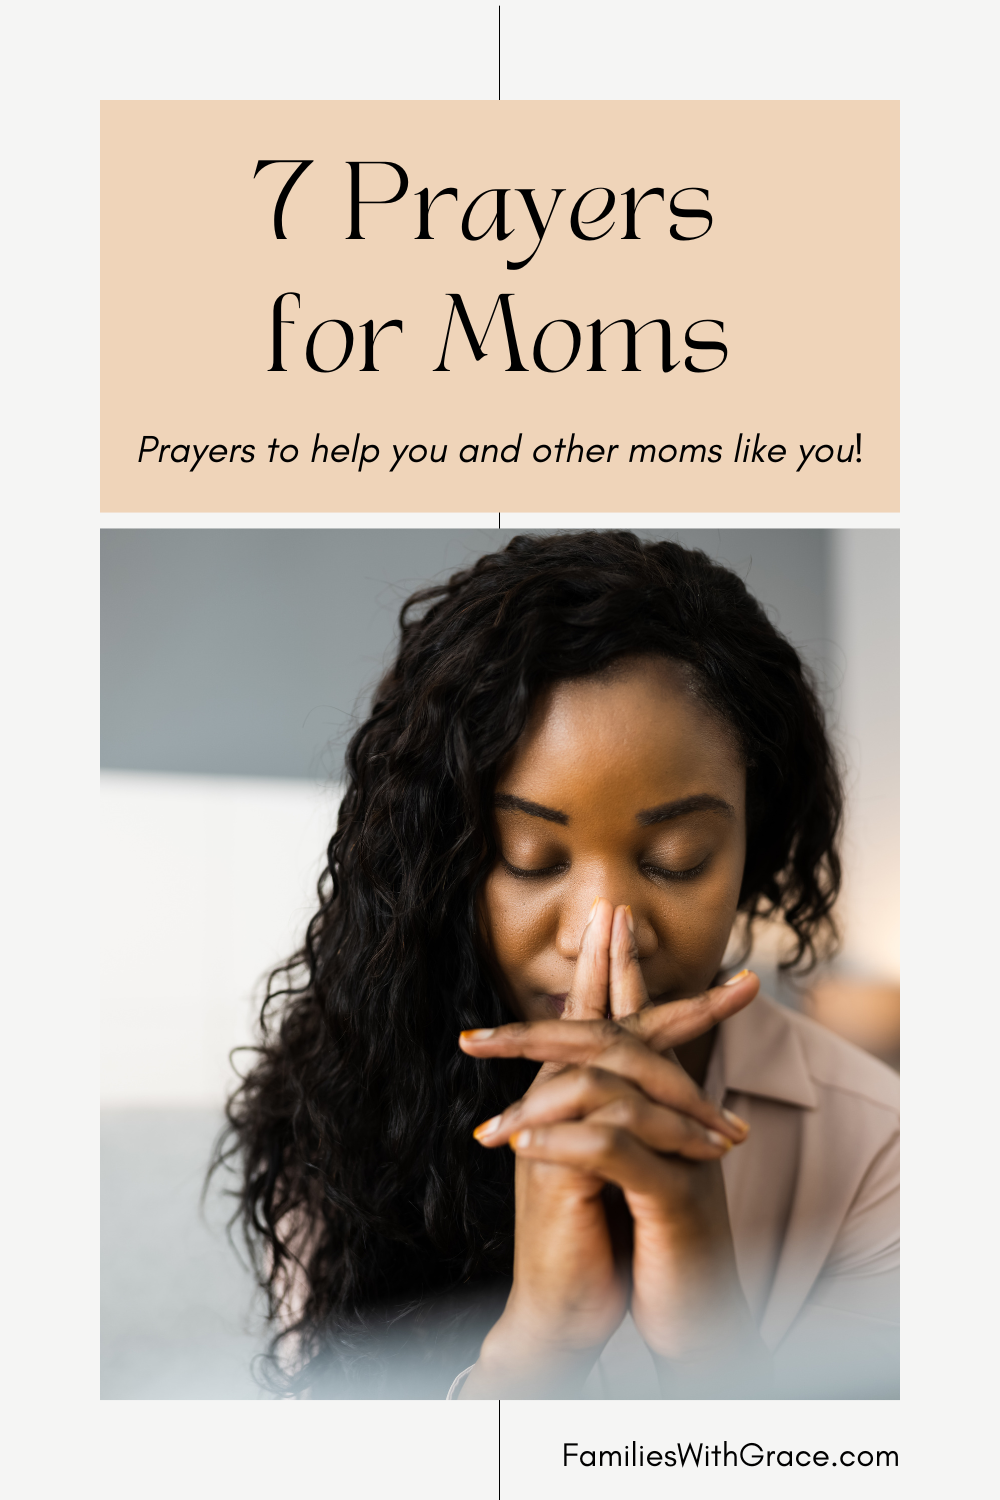 7 Prayers for moms